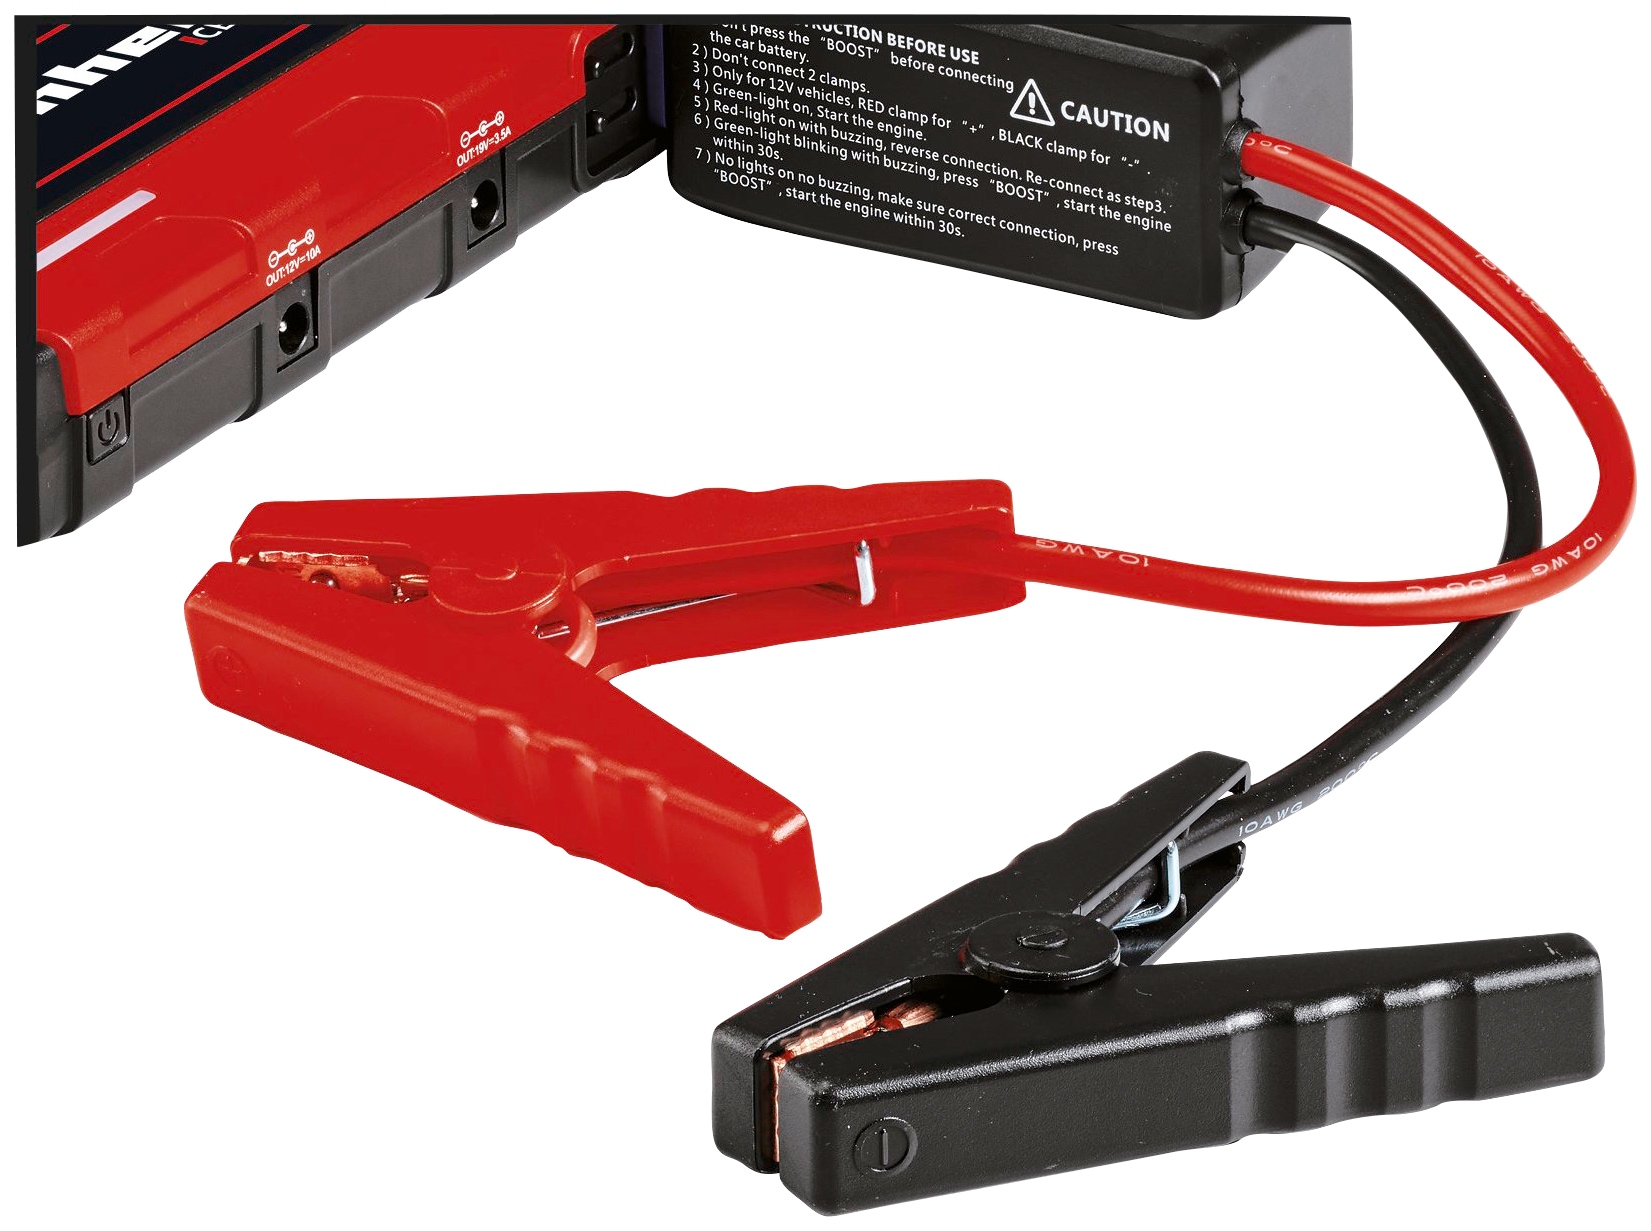 Einhell CE-JS 12 Starthilfegerät, 3 x 3700 mAh, 12V / 200A  Starthilfeeinrichtung für leere/entladene KFZ-Batterien